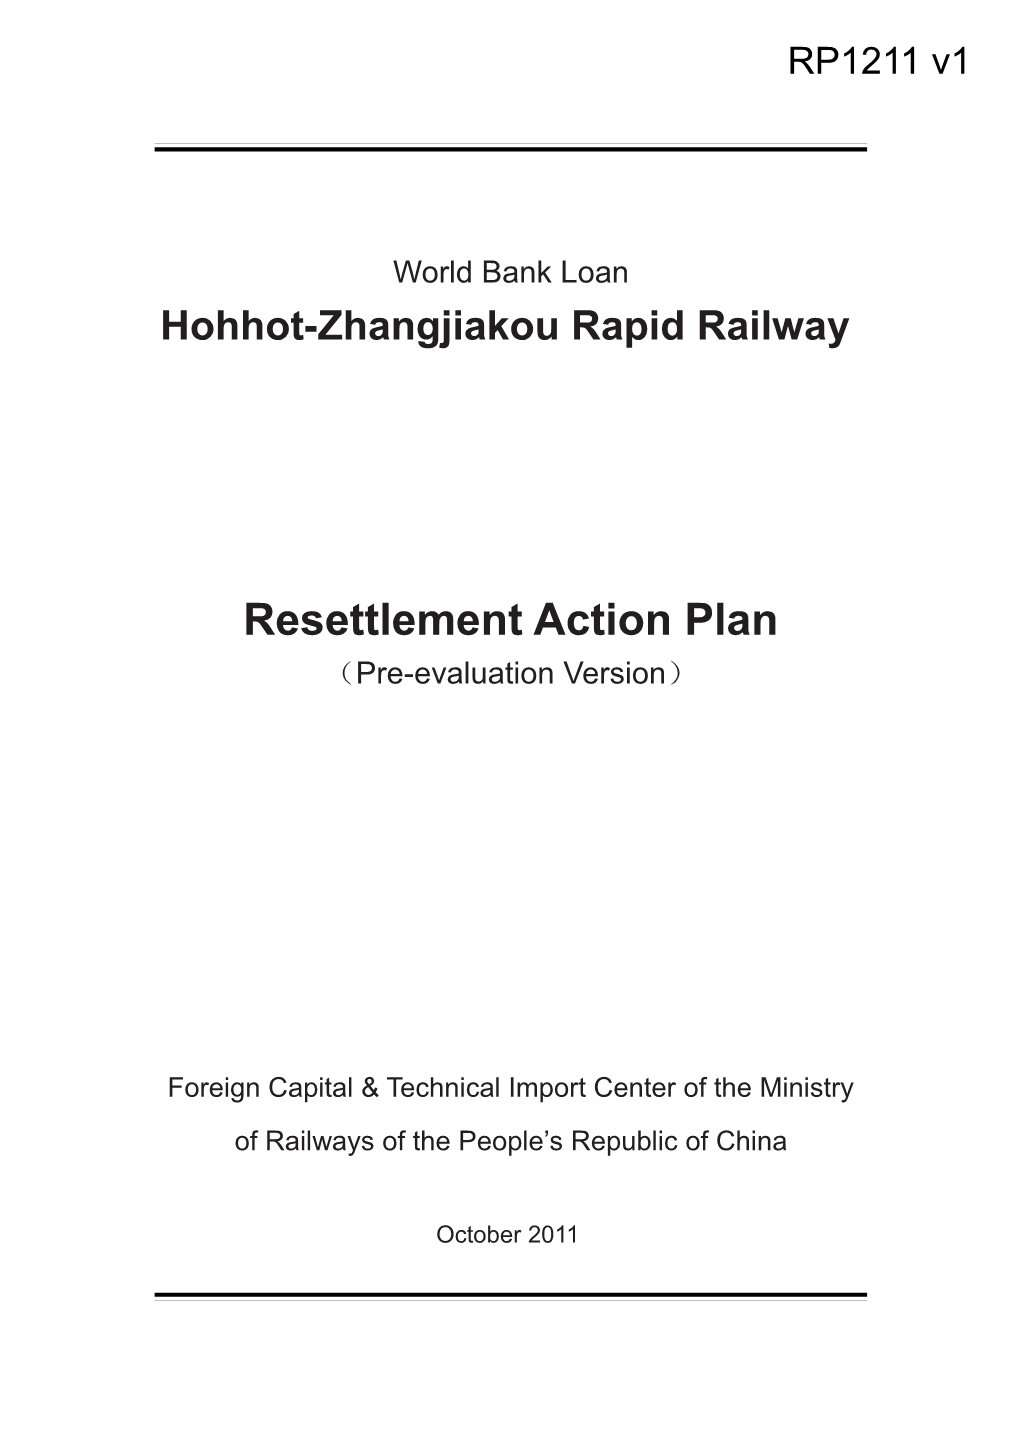 Hohhot-Zhangjiakou Rapid Railway